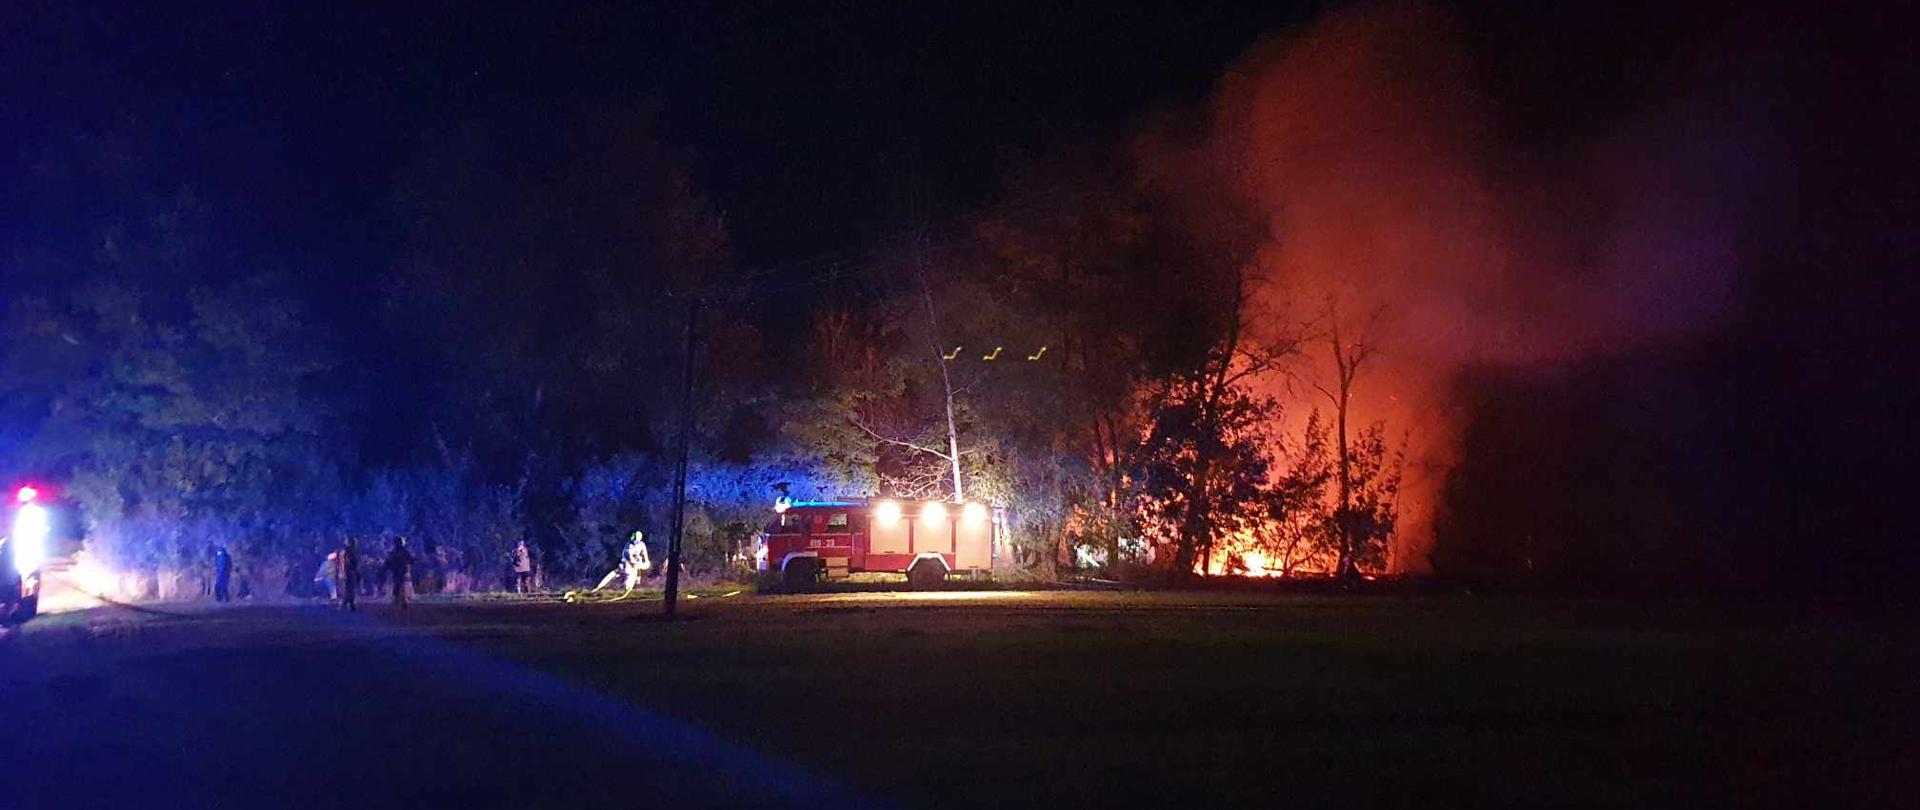  Na zdjęciu widoczna łuna ognia za drzewami oraz samochód ratowniczo-gaśniczy. Koło wozu strażackiego zarysowane sylwetki strażaków rozwijających węże pożarnicze. Zdjęcie zrobione w porze nocnej.